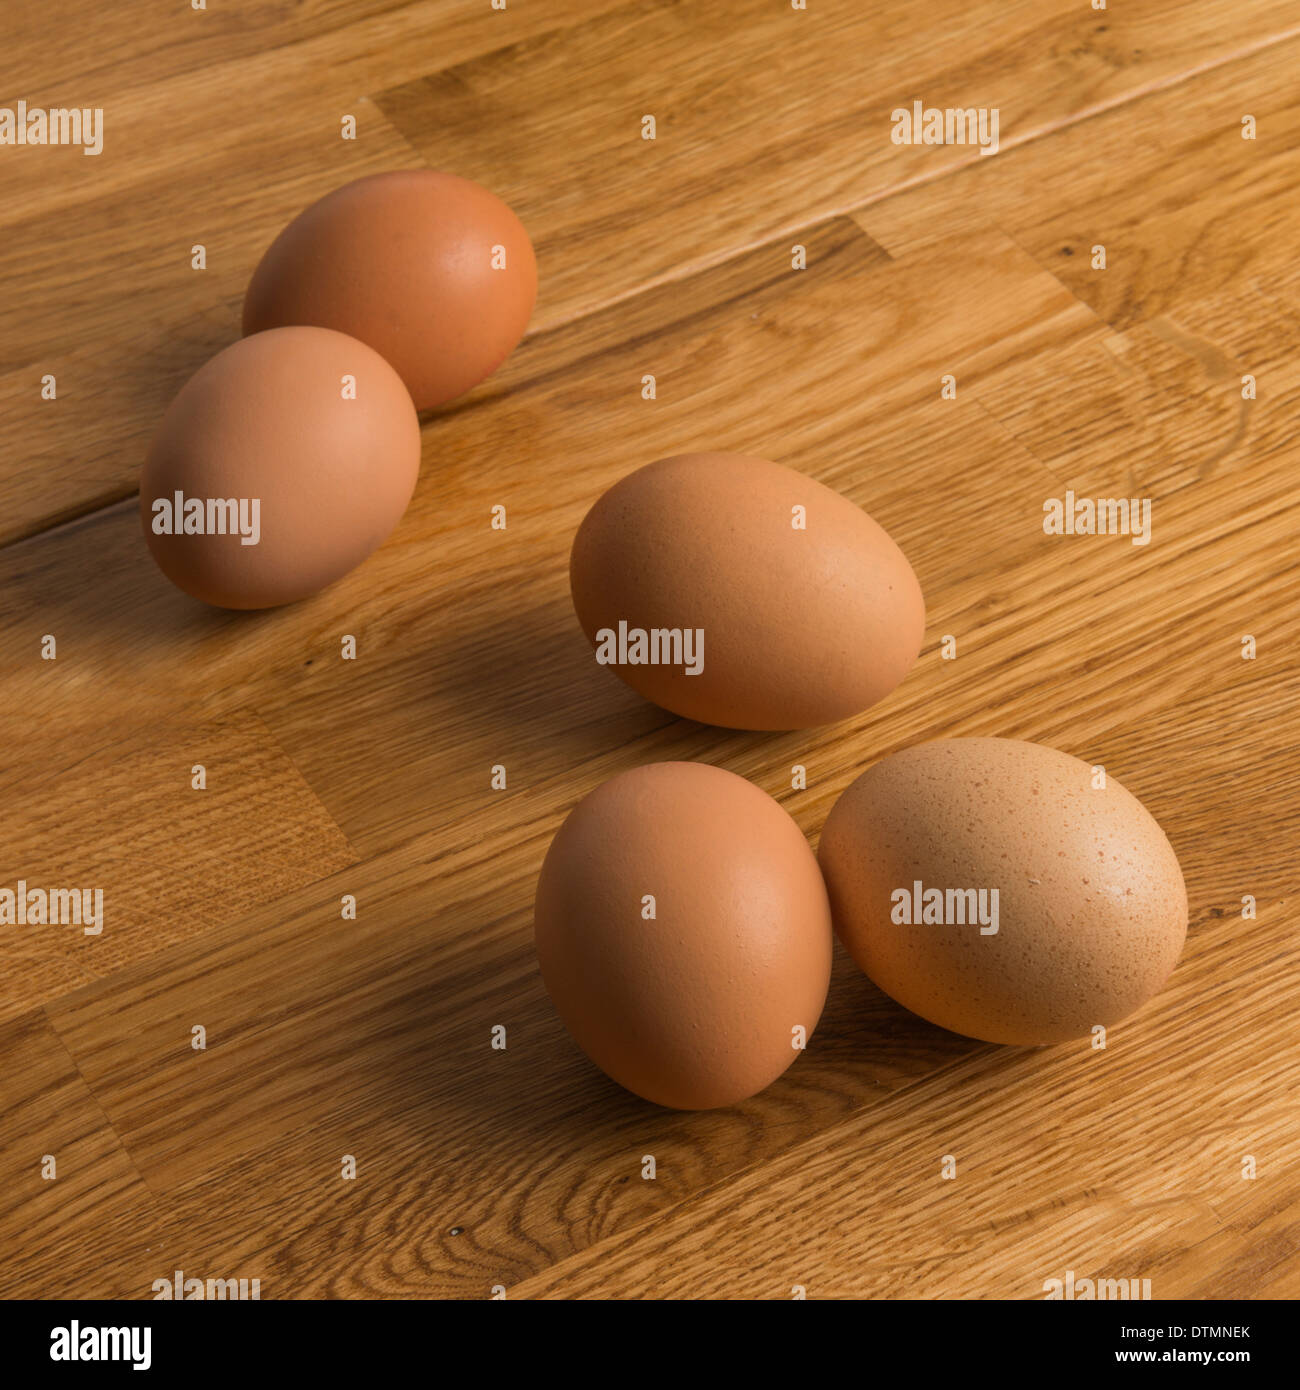 Freilandhaltung Eiern eine Eiche Küche obenauf. Stockfoto